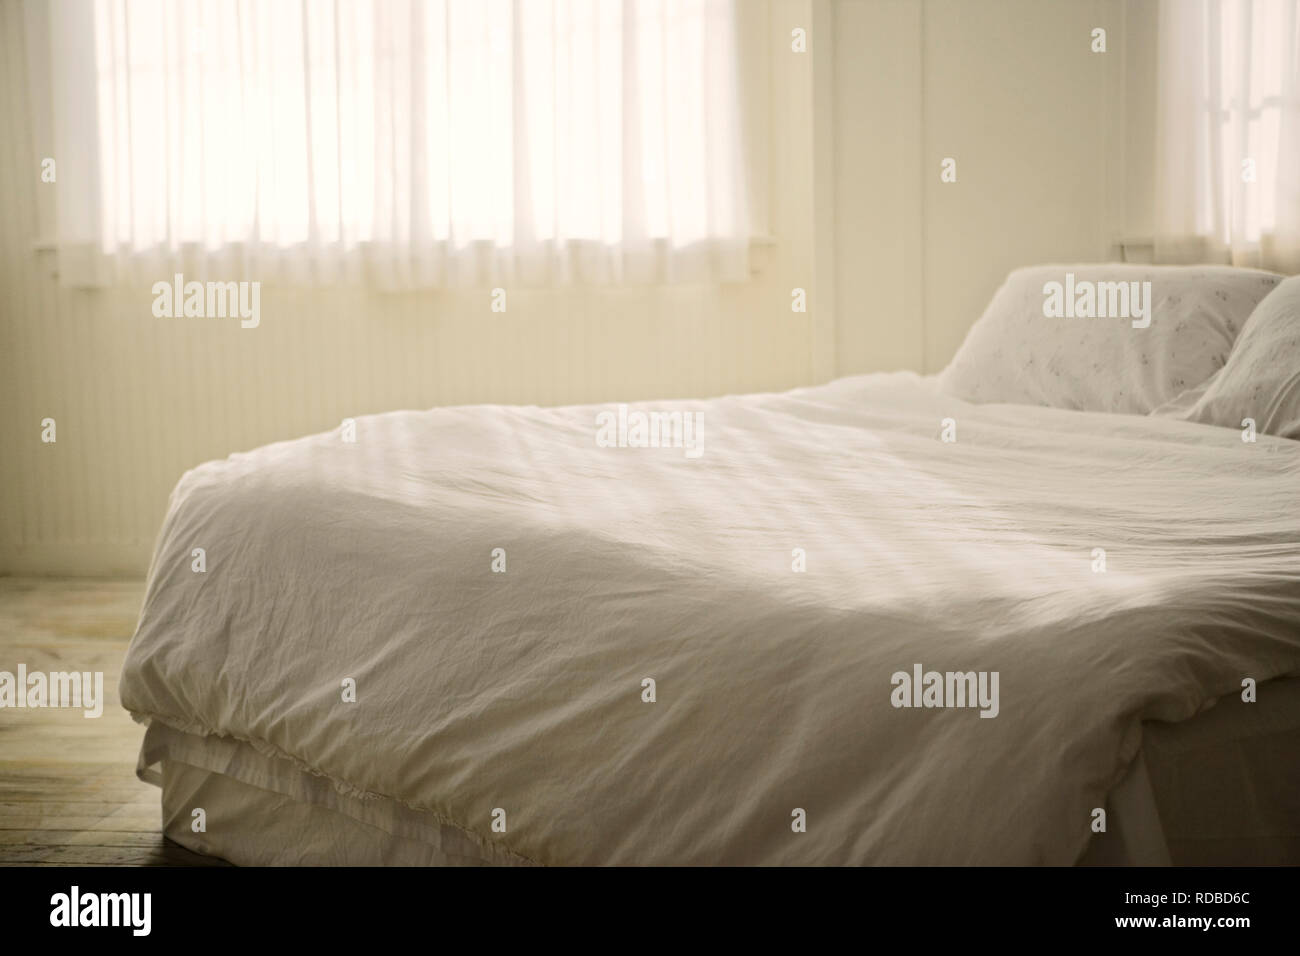 Lenzuola bianche su un letto all'interno di una camera bianca. Foto Stock